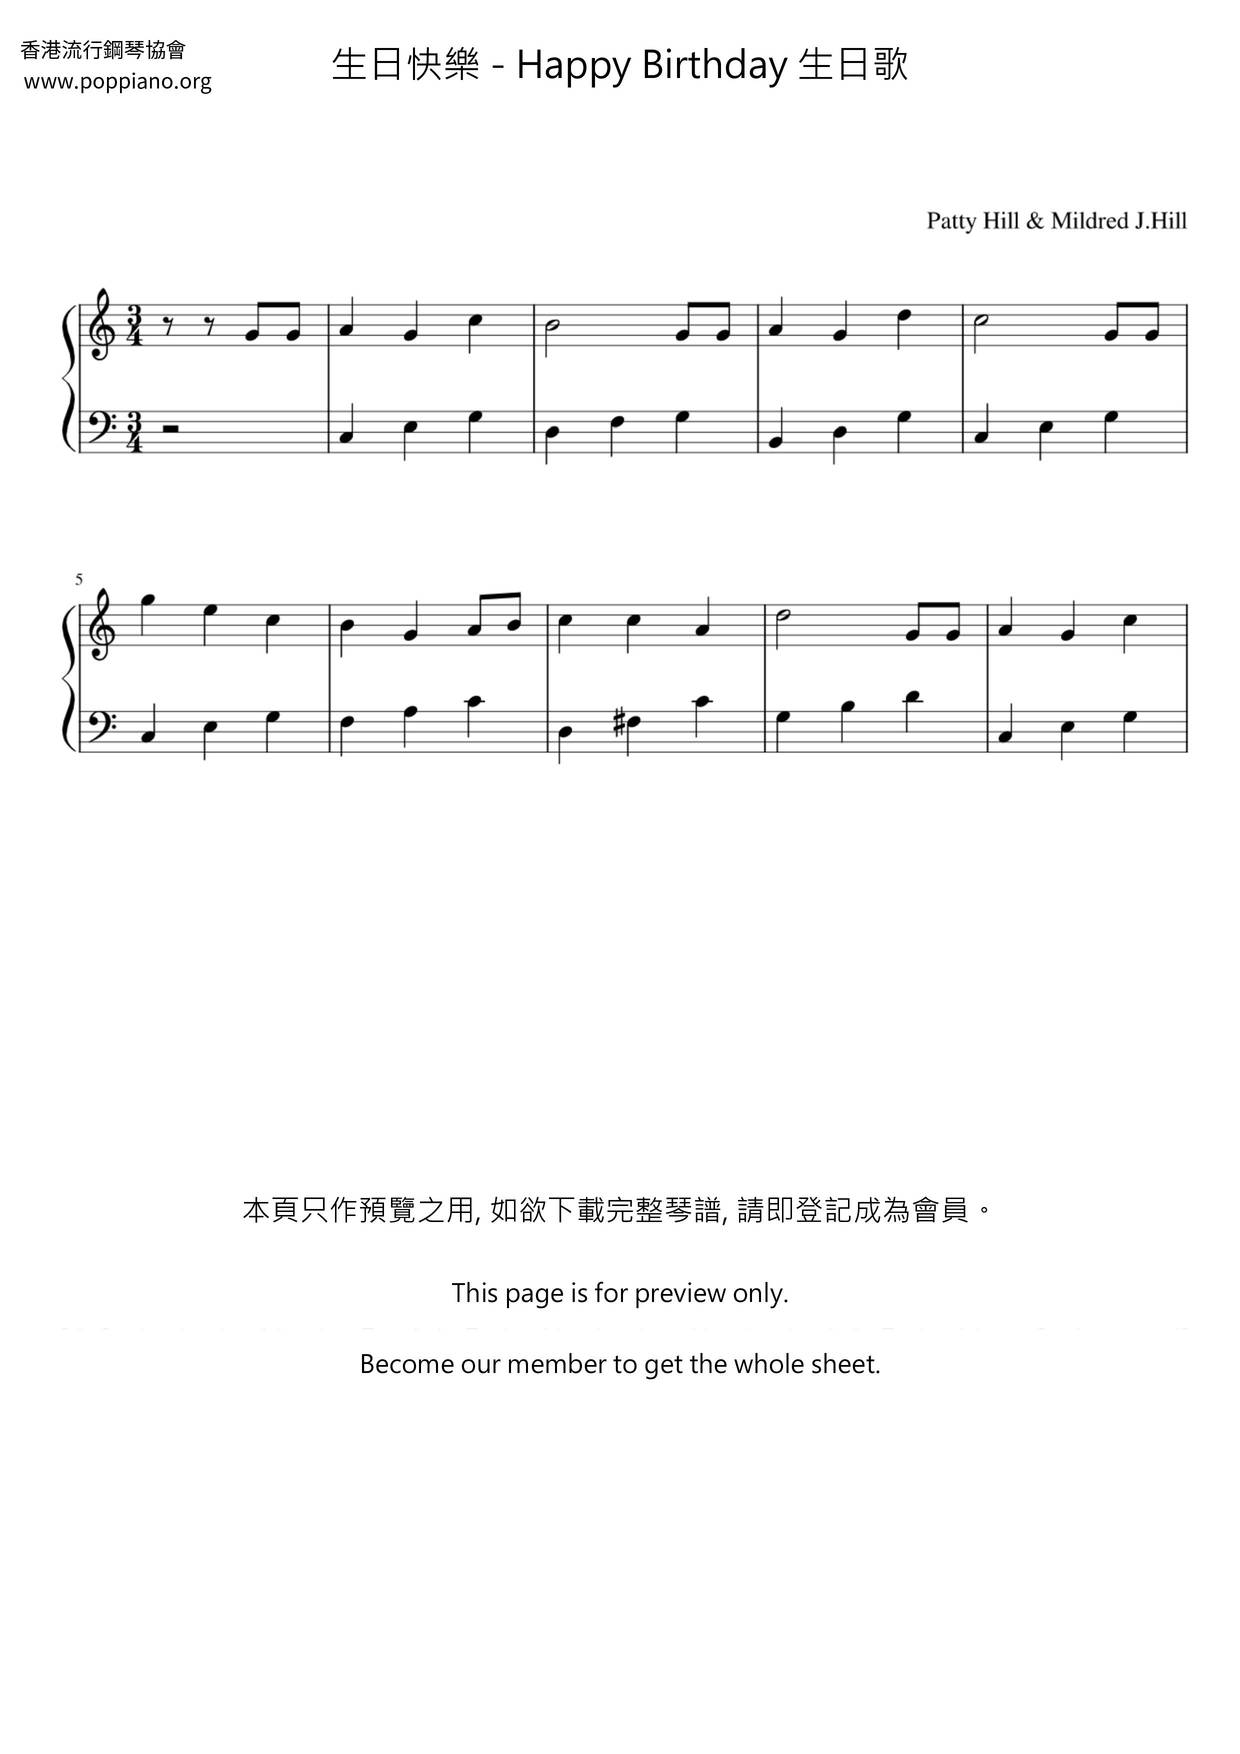 生日快樂 Happy Birthday 生日歌 ピアノ譜pdf 香港ポップピアノ協会 無料pdf楽譜ダウンロード Gakufu